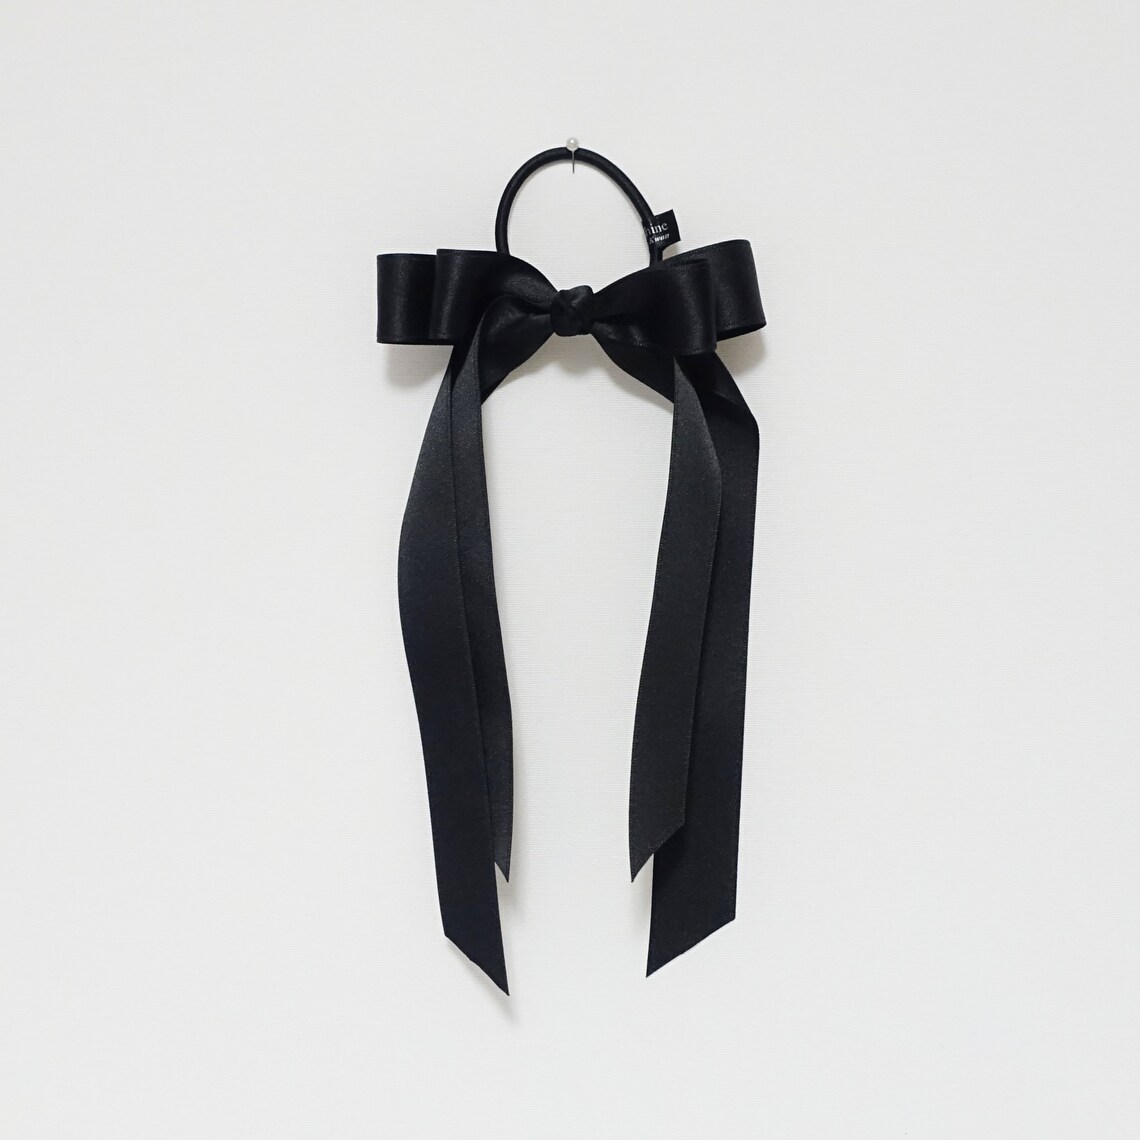 Black cream satin long tail bow hair elastic ponytail holder | Etsy